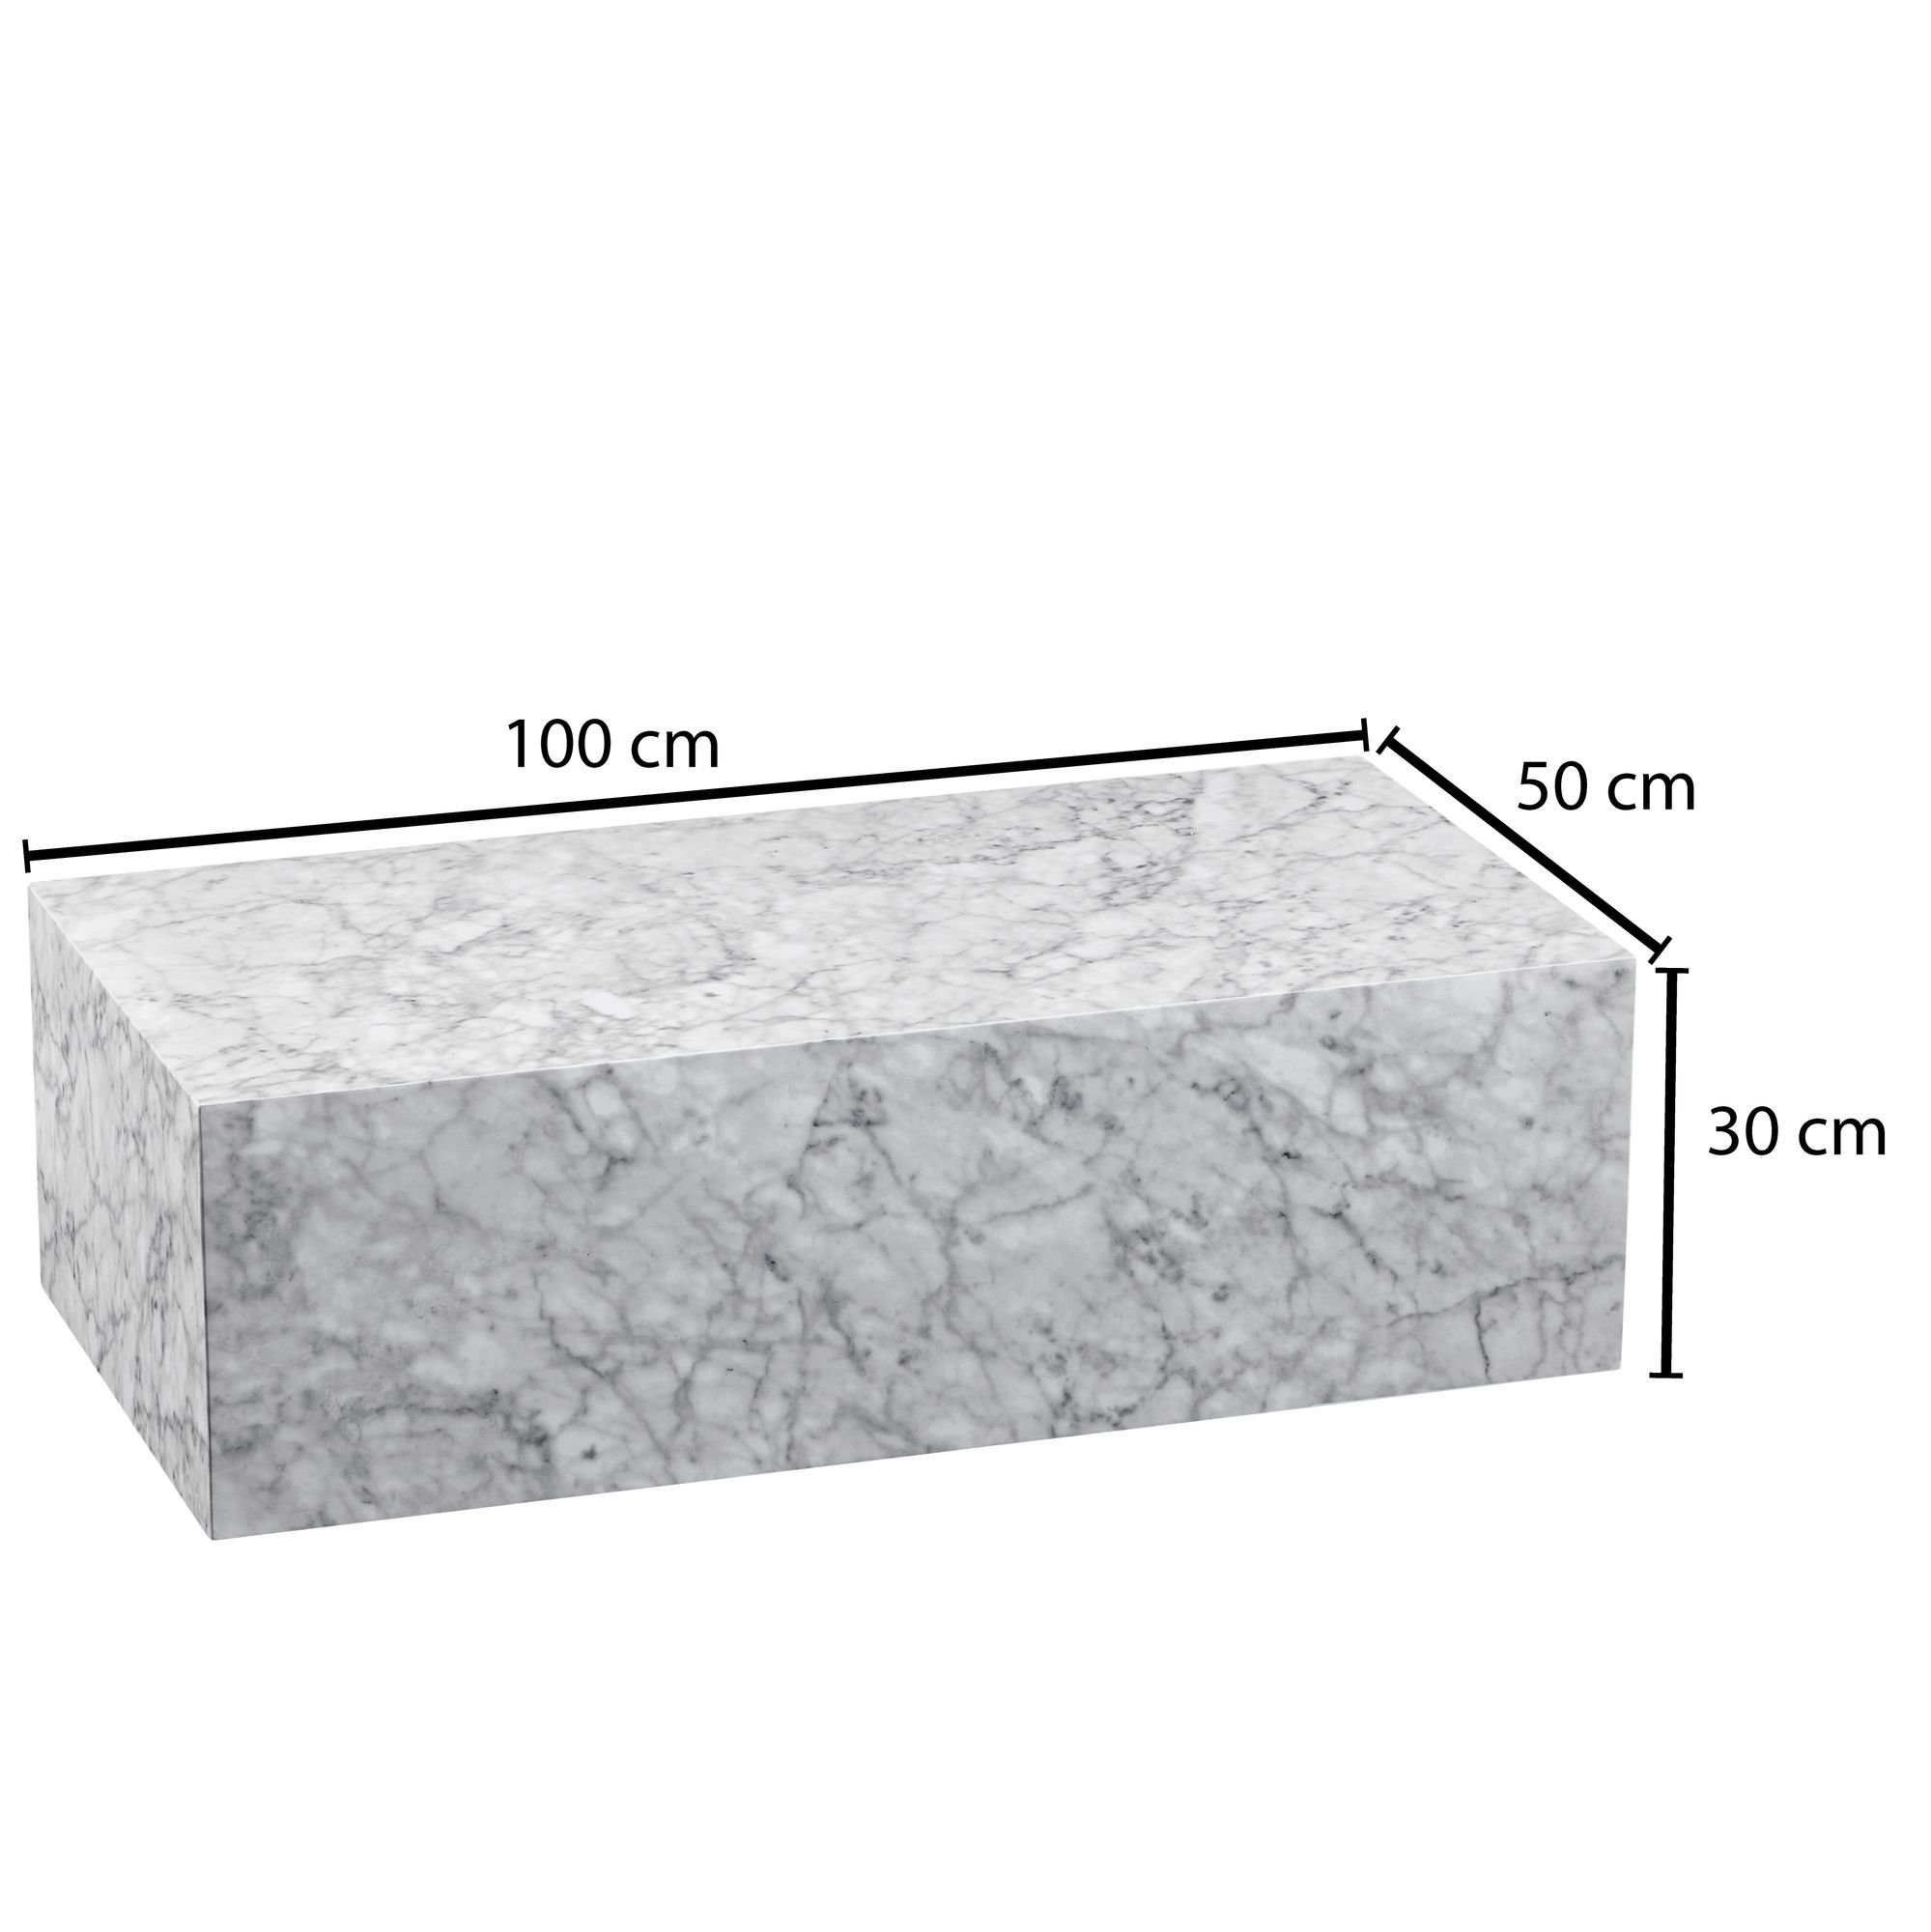 MONOBLOC Lounge Design Couchtisch Marmor Cube cm MDF Couchtisch 100x30x50 Weiß, Beistelltisch Tisch möbelando Wohnzimmertisch MONOBLOC MDF Rechteckig, Hochglanz Hochglanz, mit 100x30x50 Optik cm Couchtisch